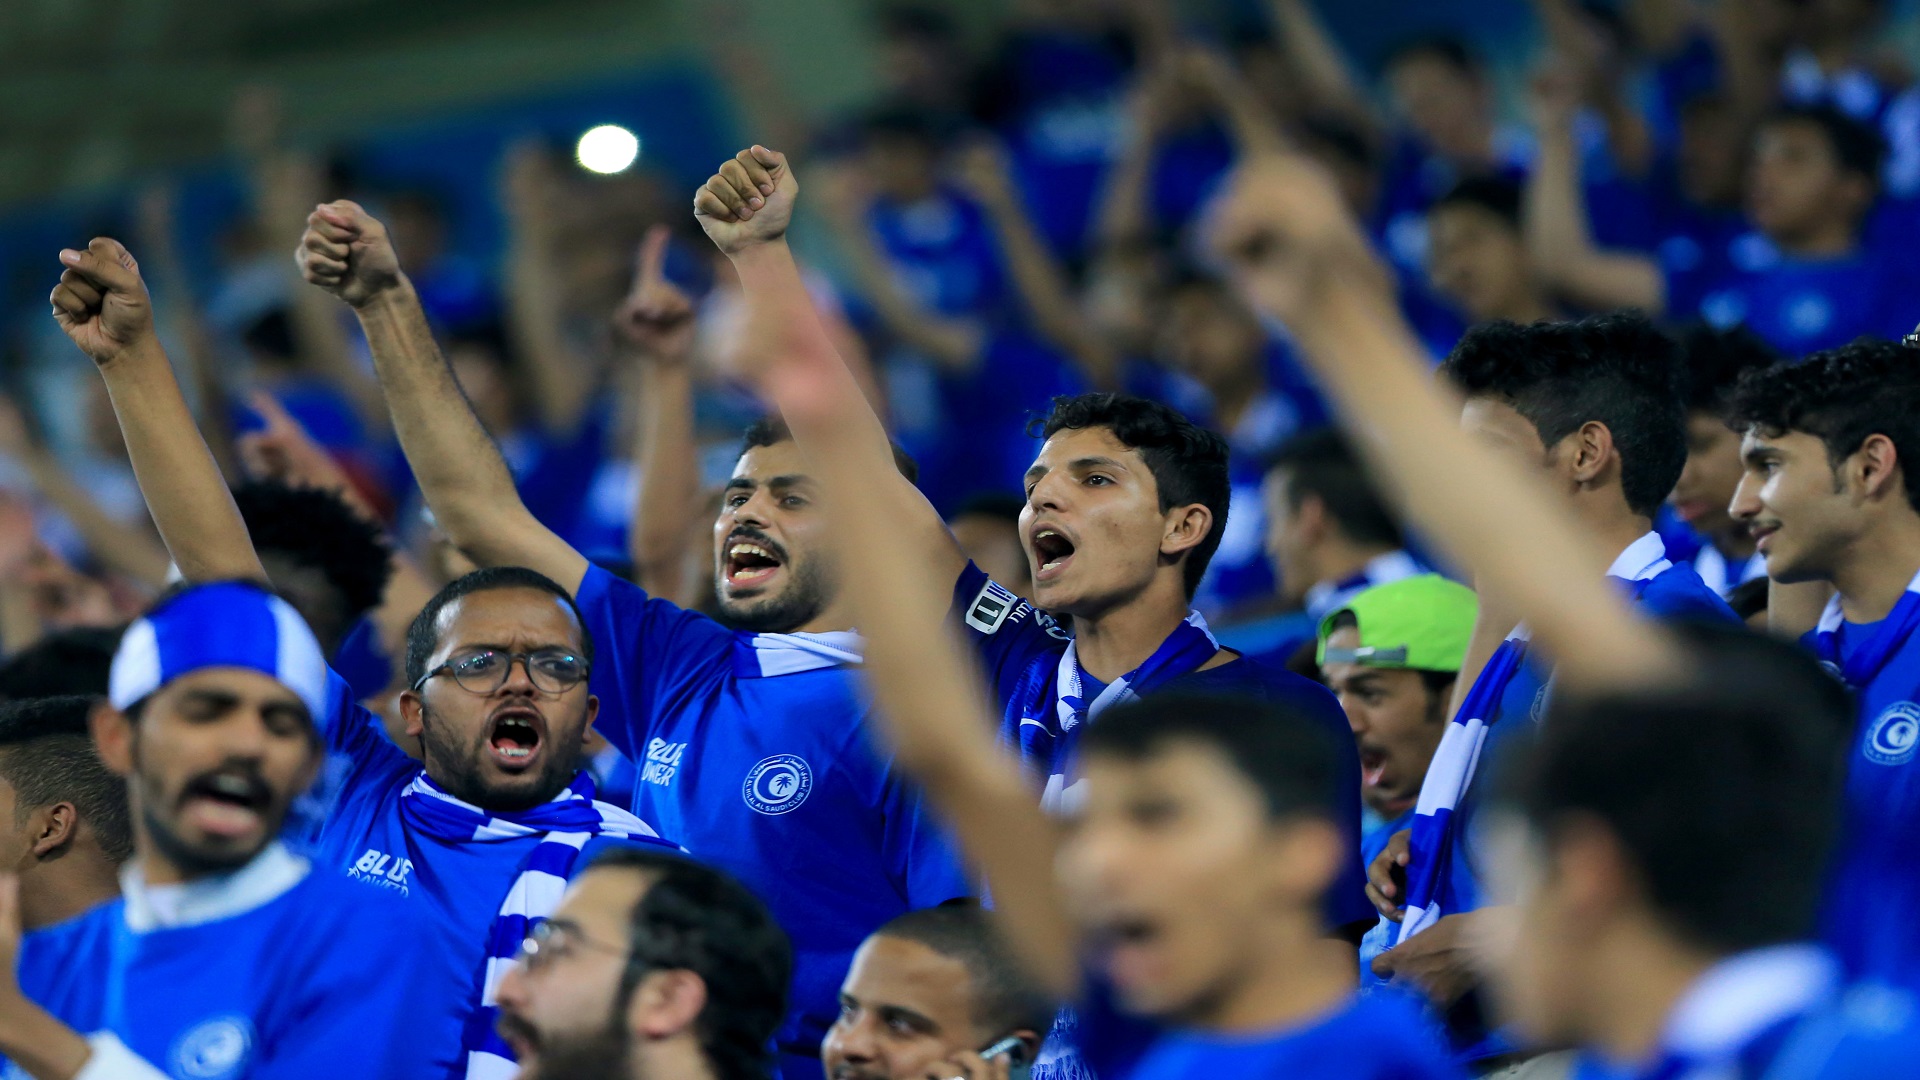 جماهير الهلال السعودي في قطر لمساندة فريقها بأبطال آسيا